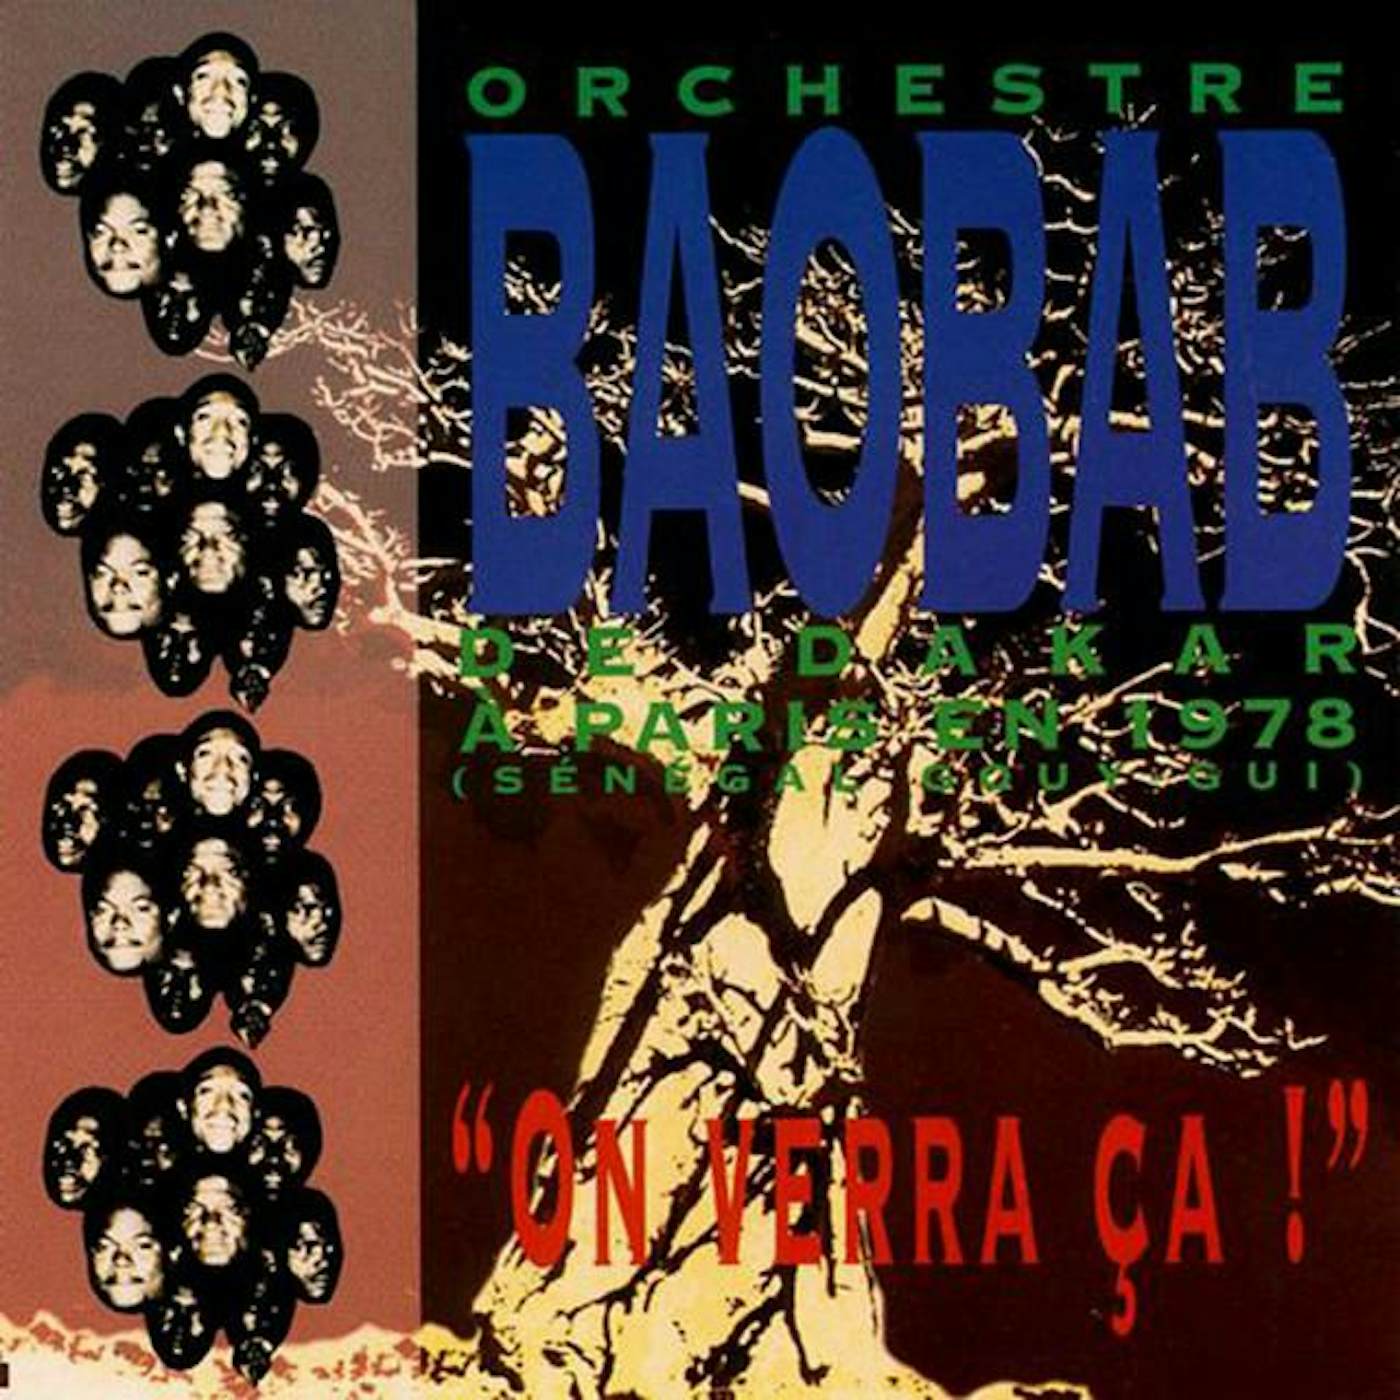 Orchestre Baobab